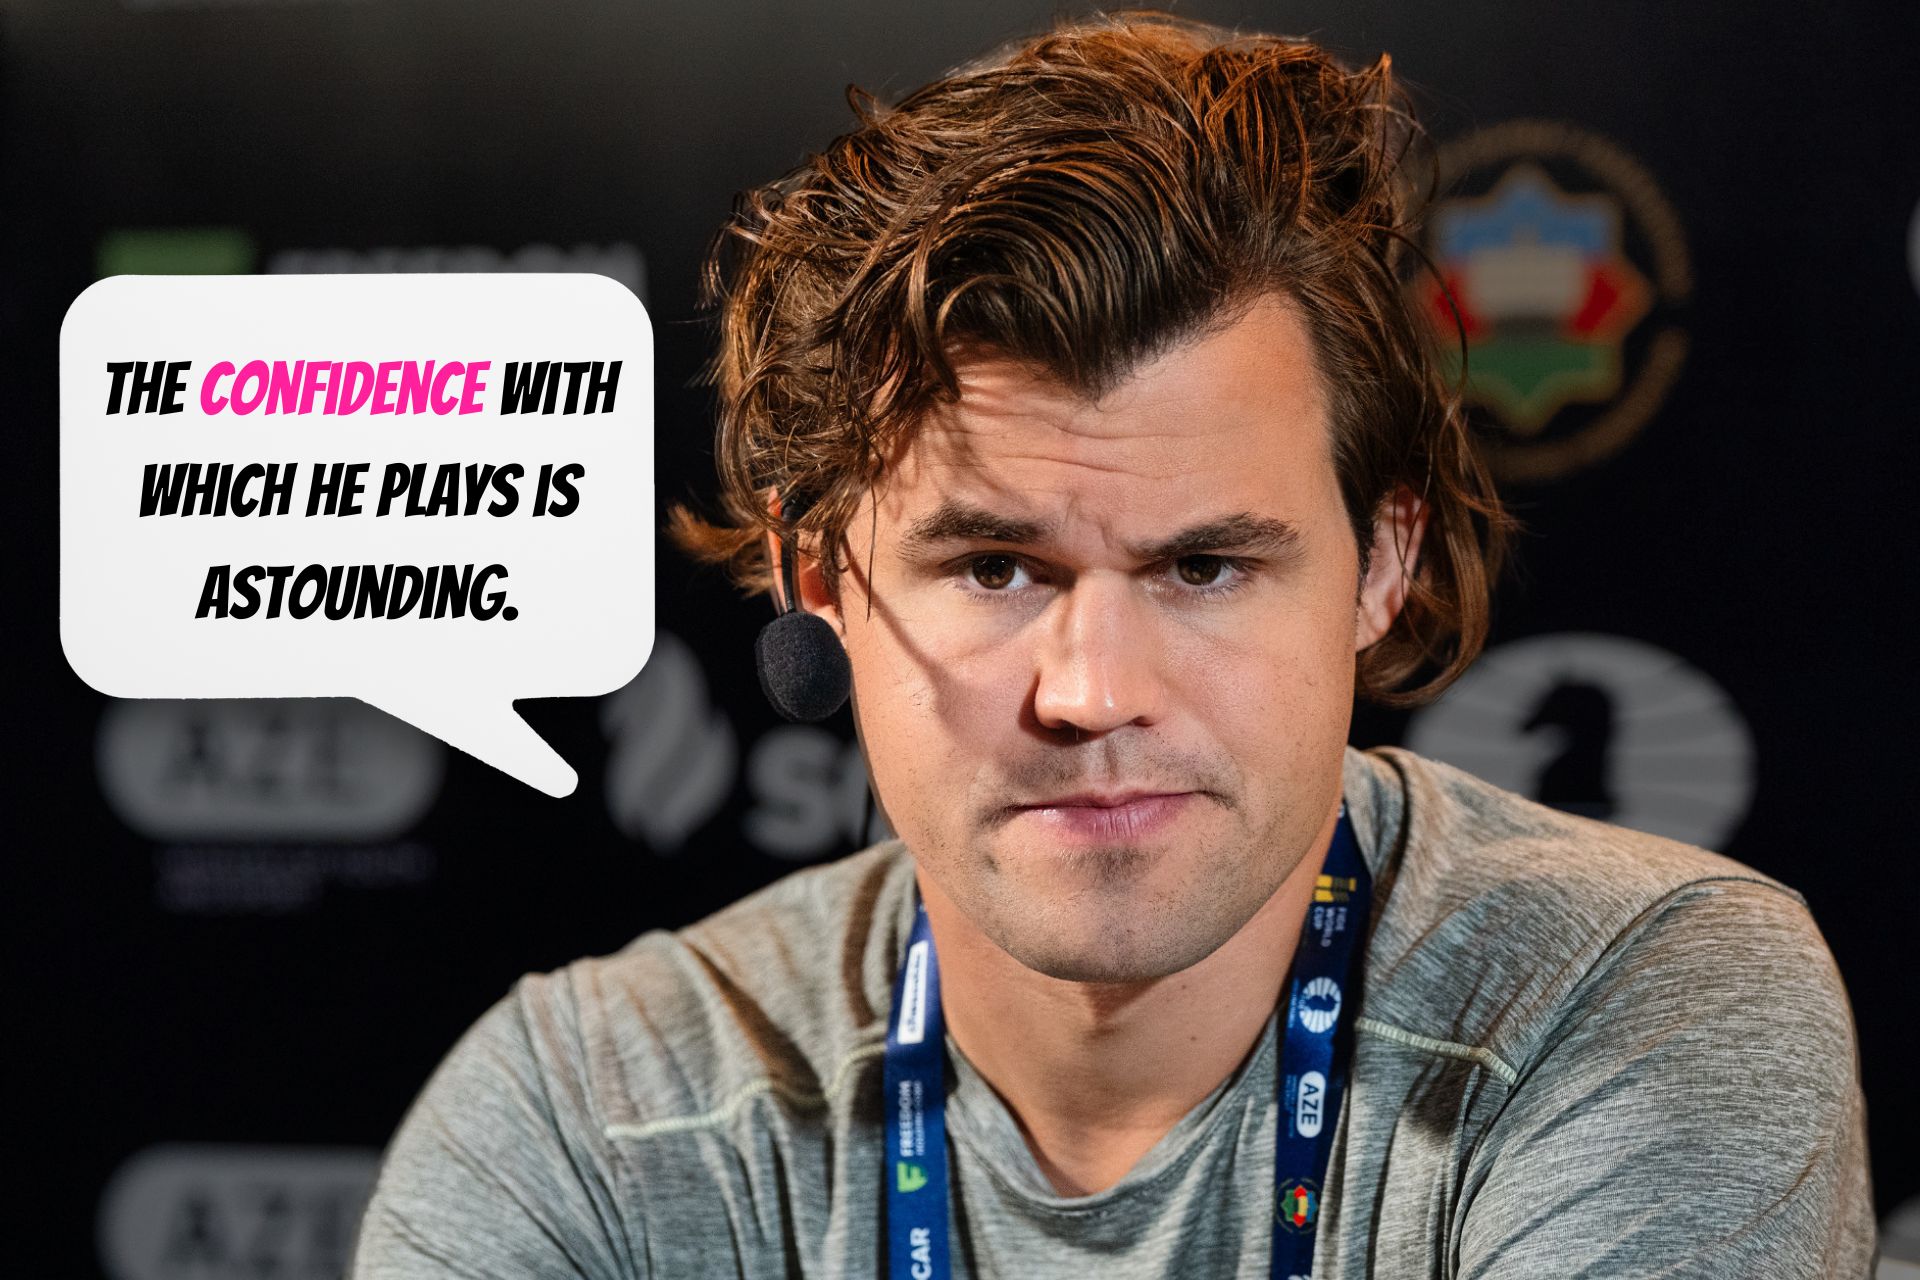 I started to get pretty nervous” Magnus Carlsen